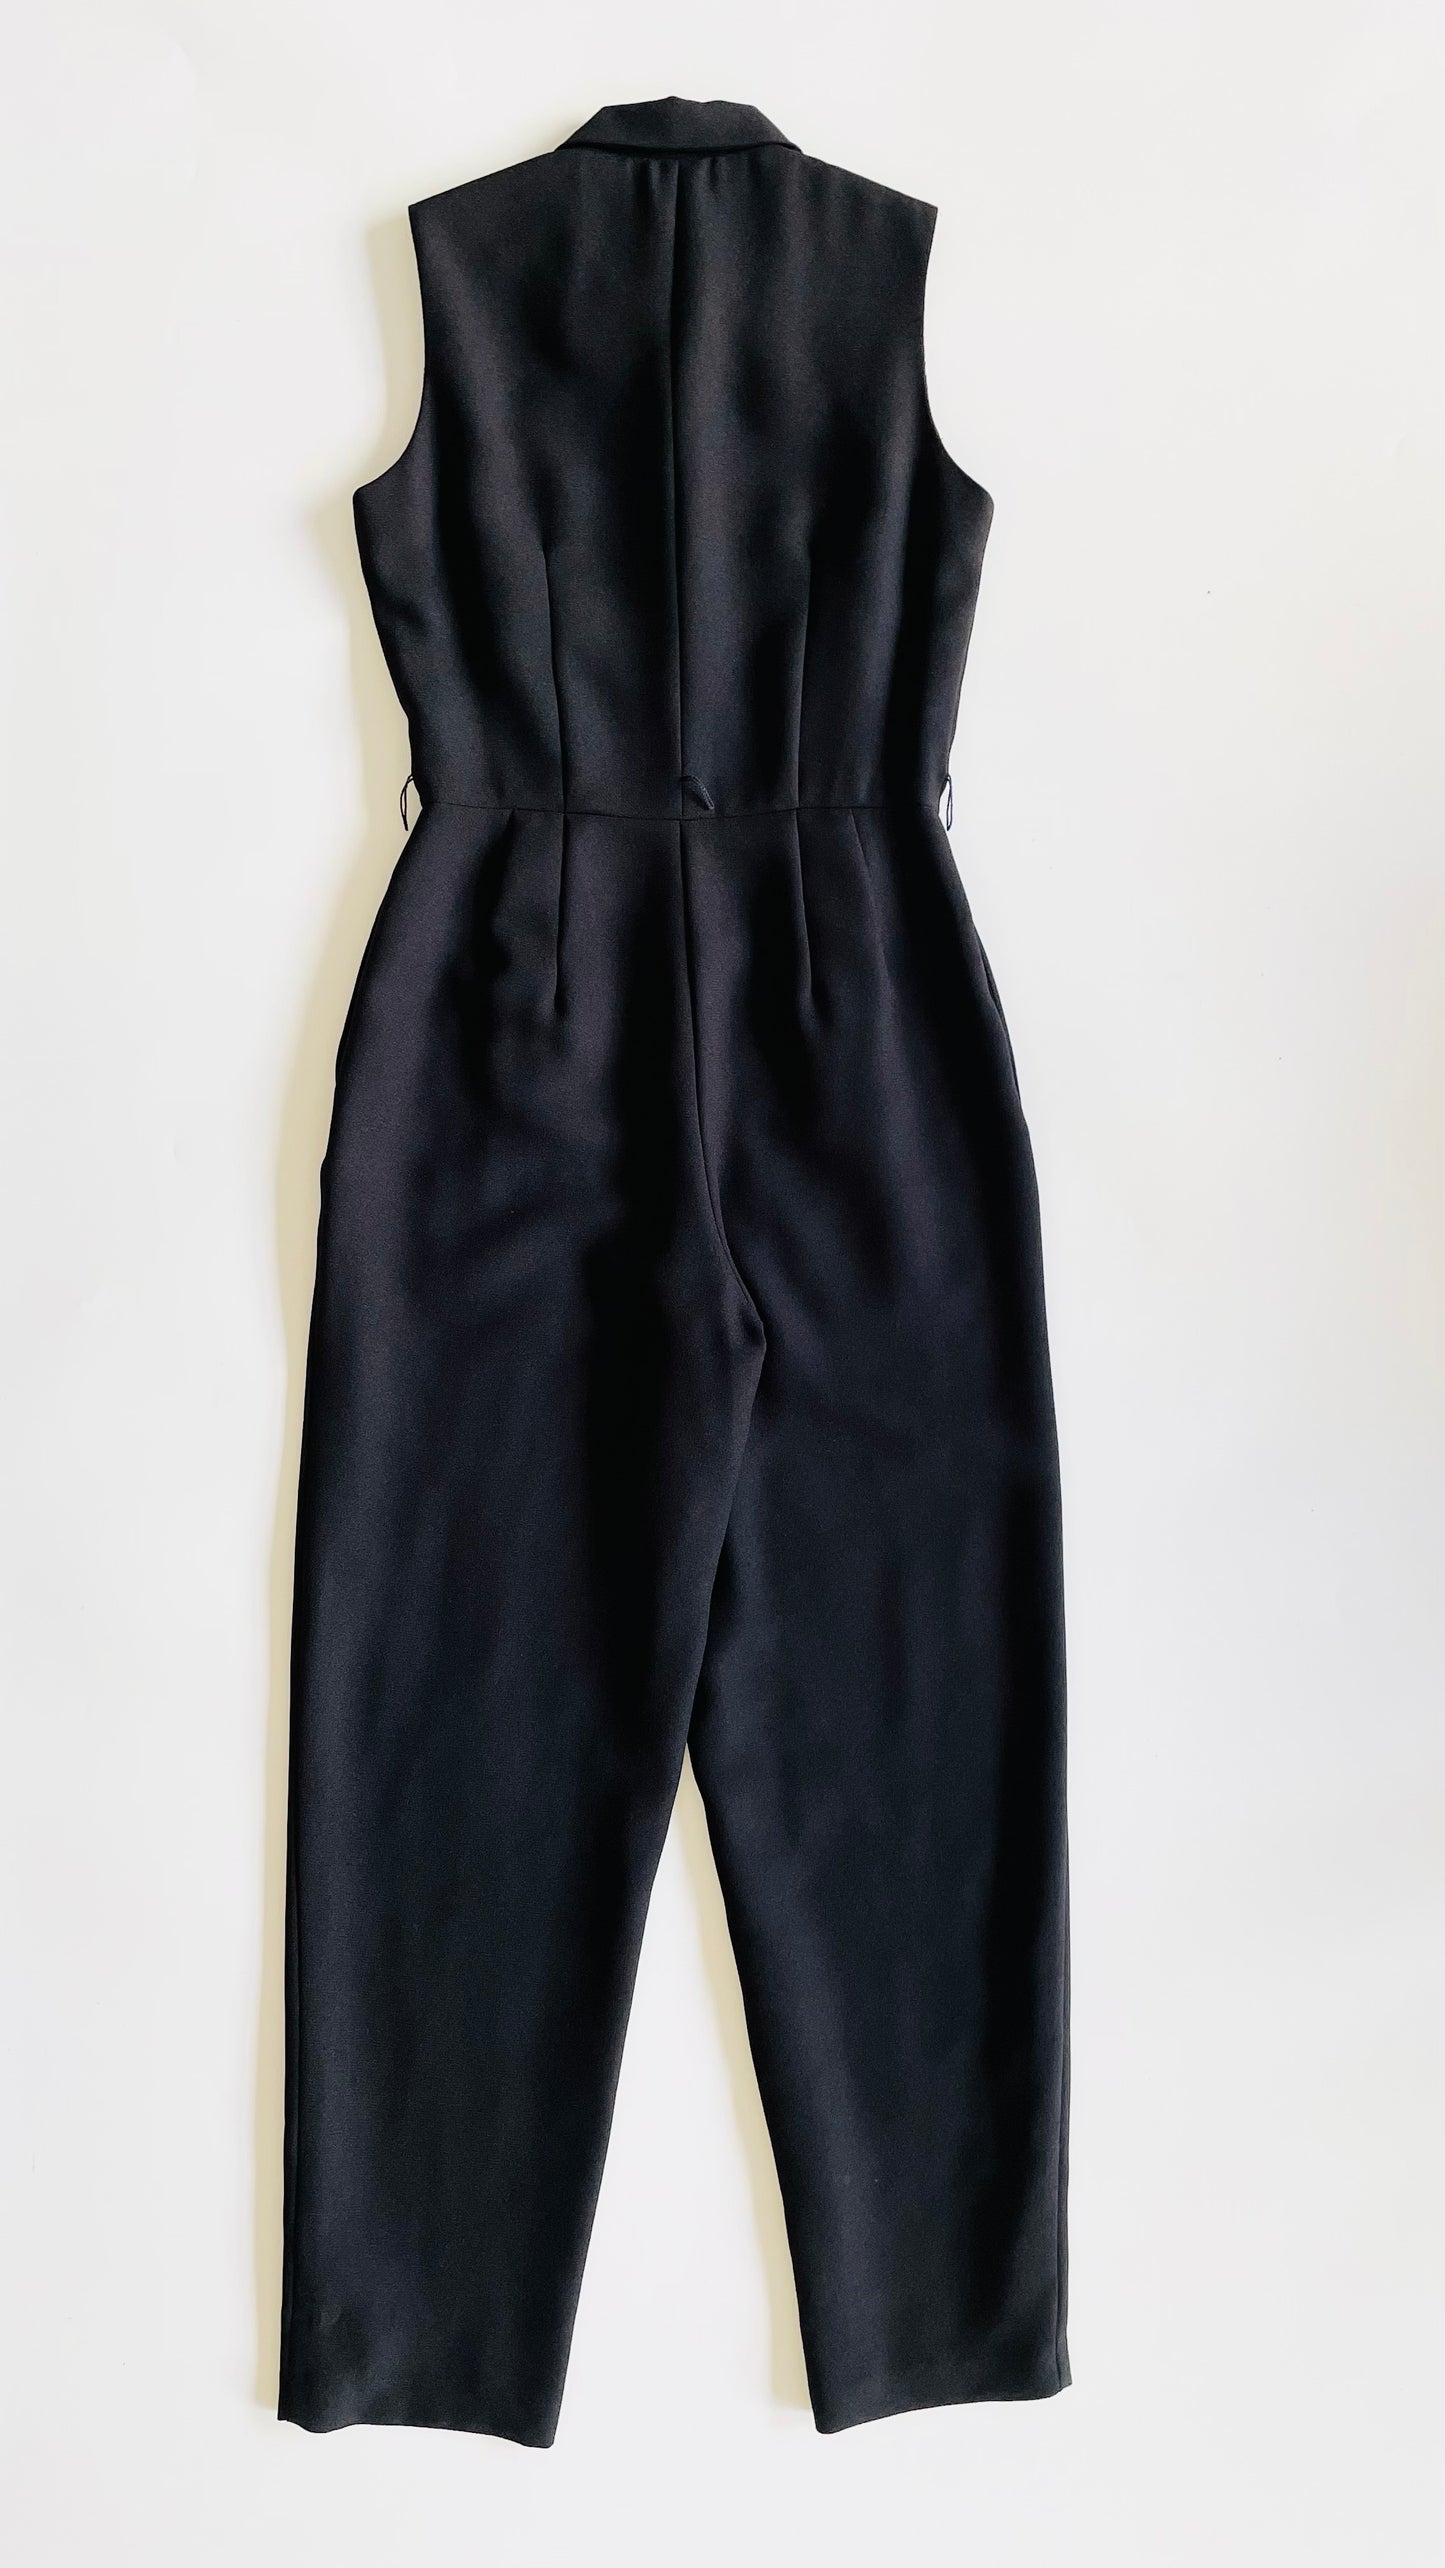 Vintage 90s black tailored jumpsuit - Size 4